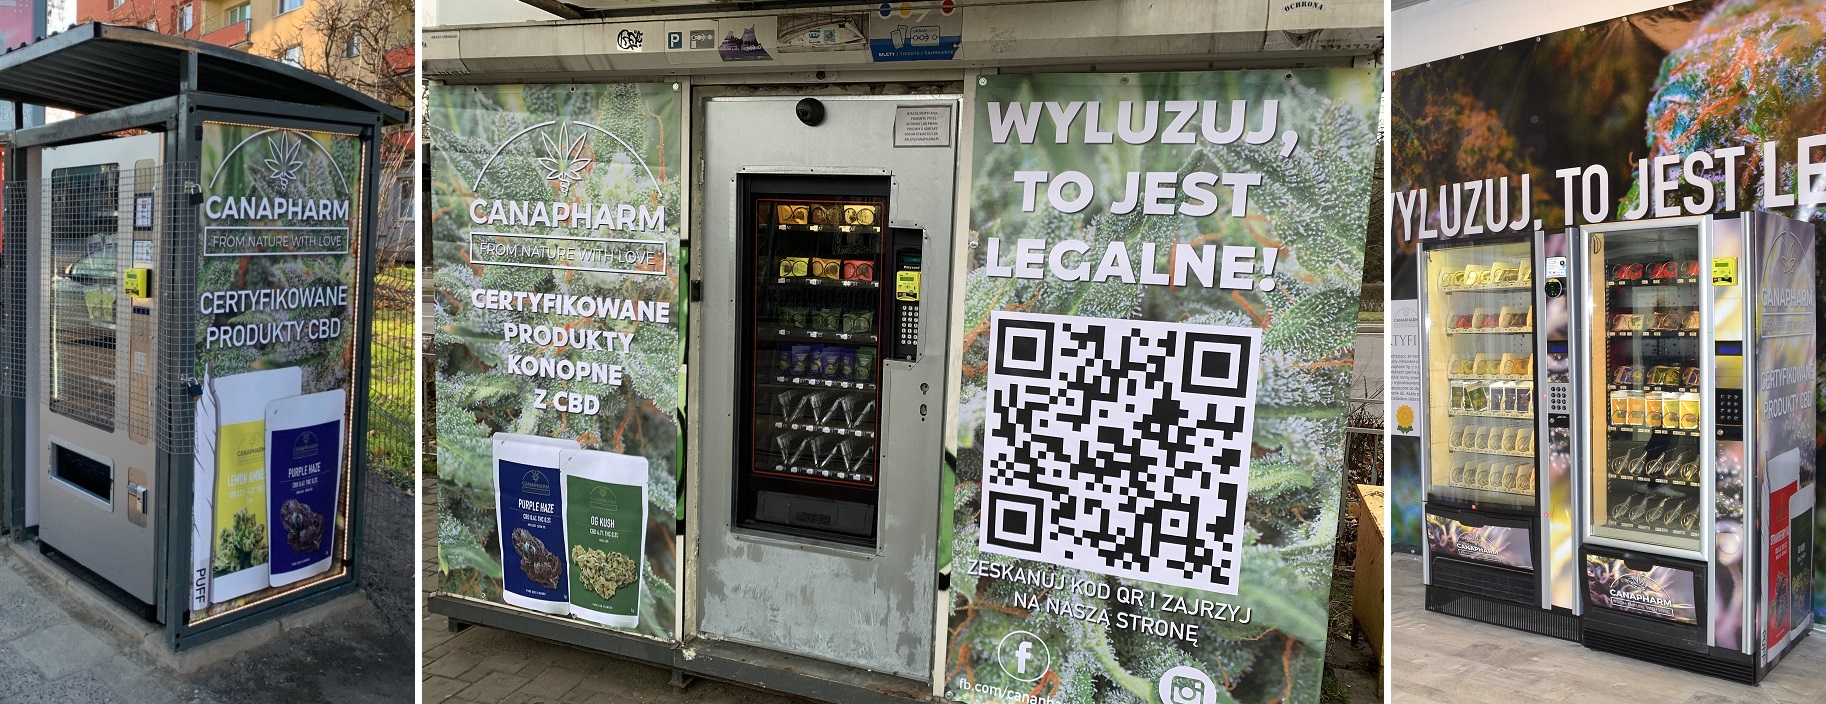 automaty w Gdańsku i Gdyni